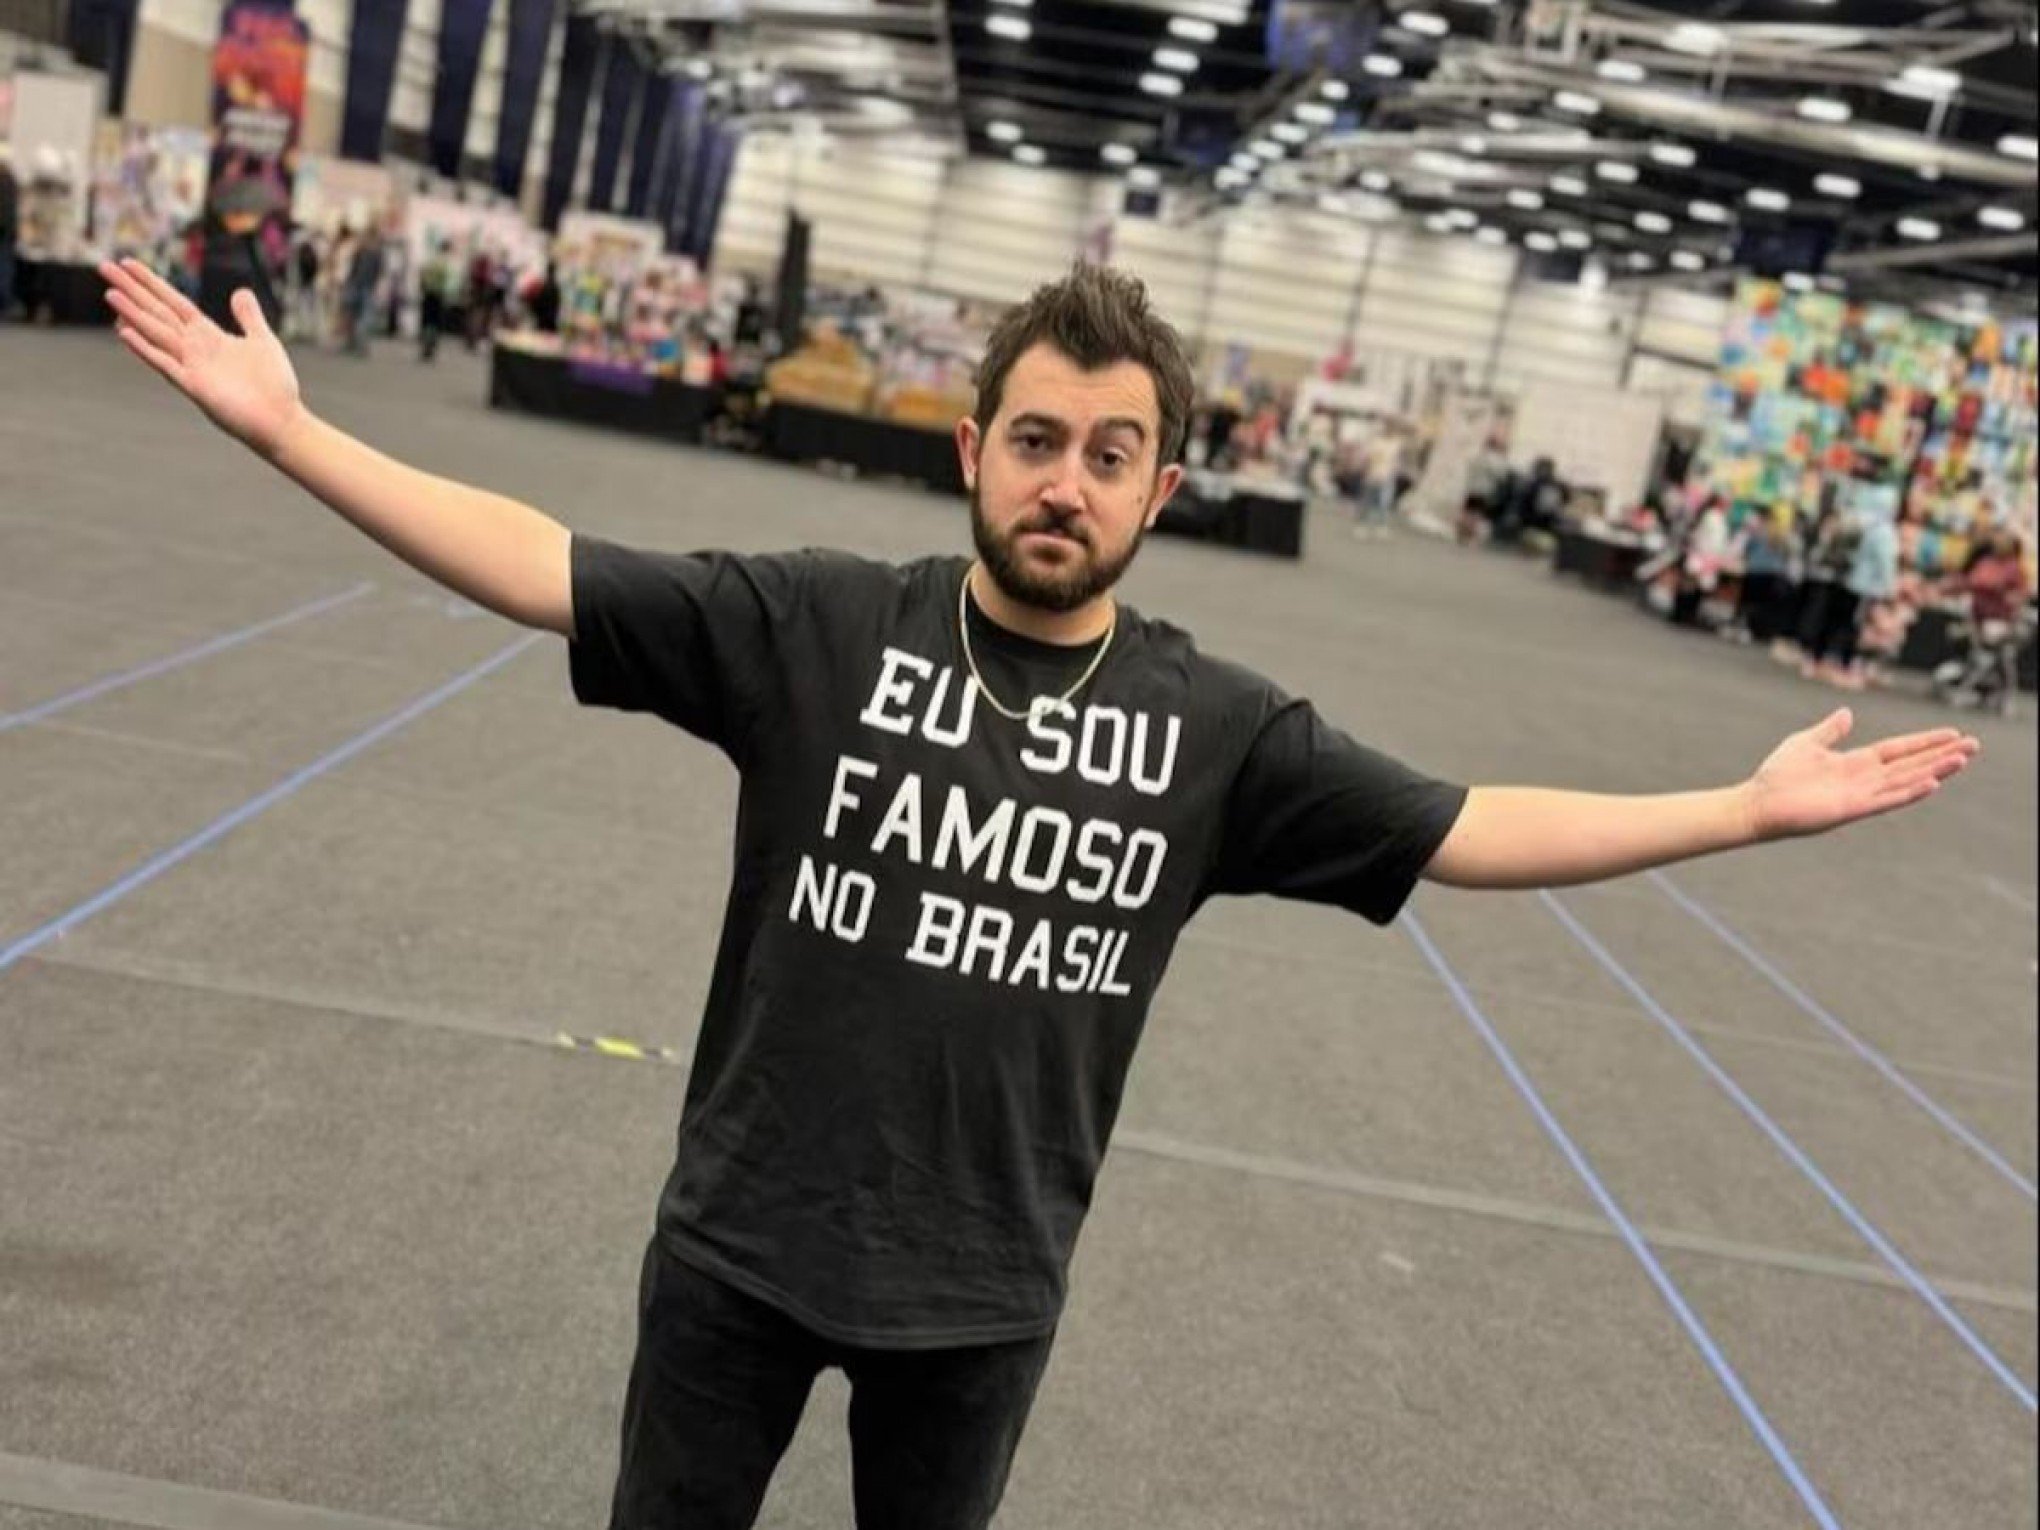 Ator de Todo Mundo Odeia o Chris que viralizou com camiseta chega no Brasil: "a melhor recepção que eu poderia ter"